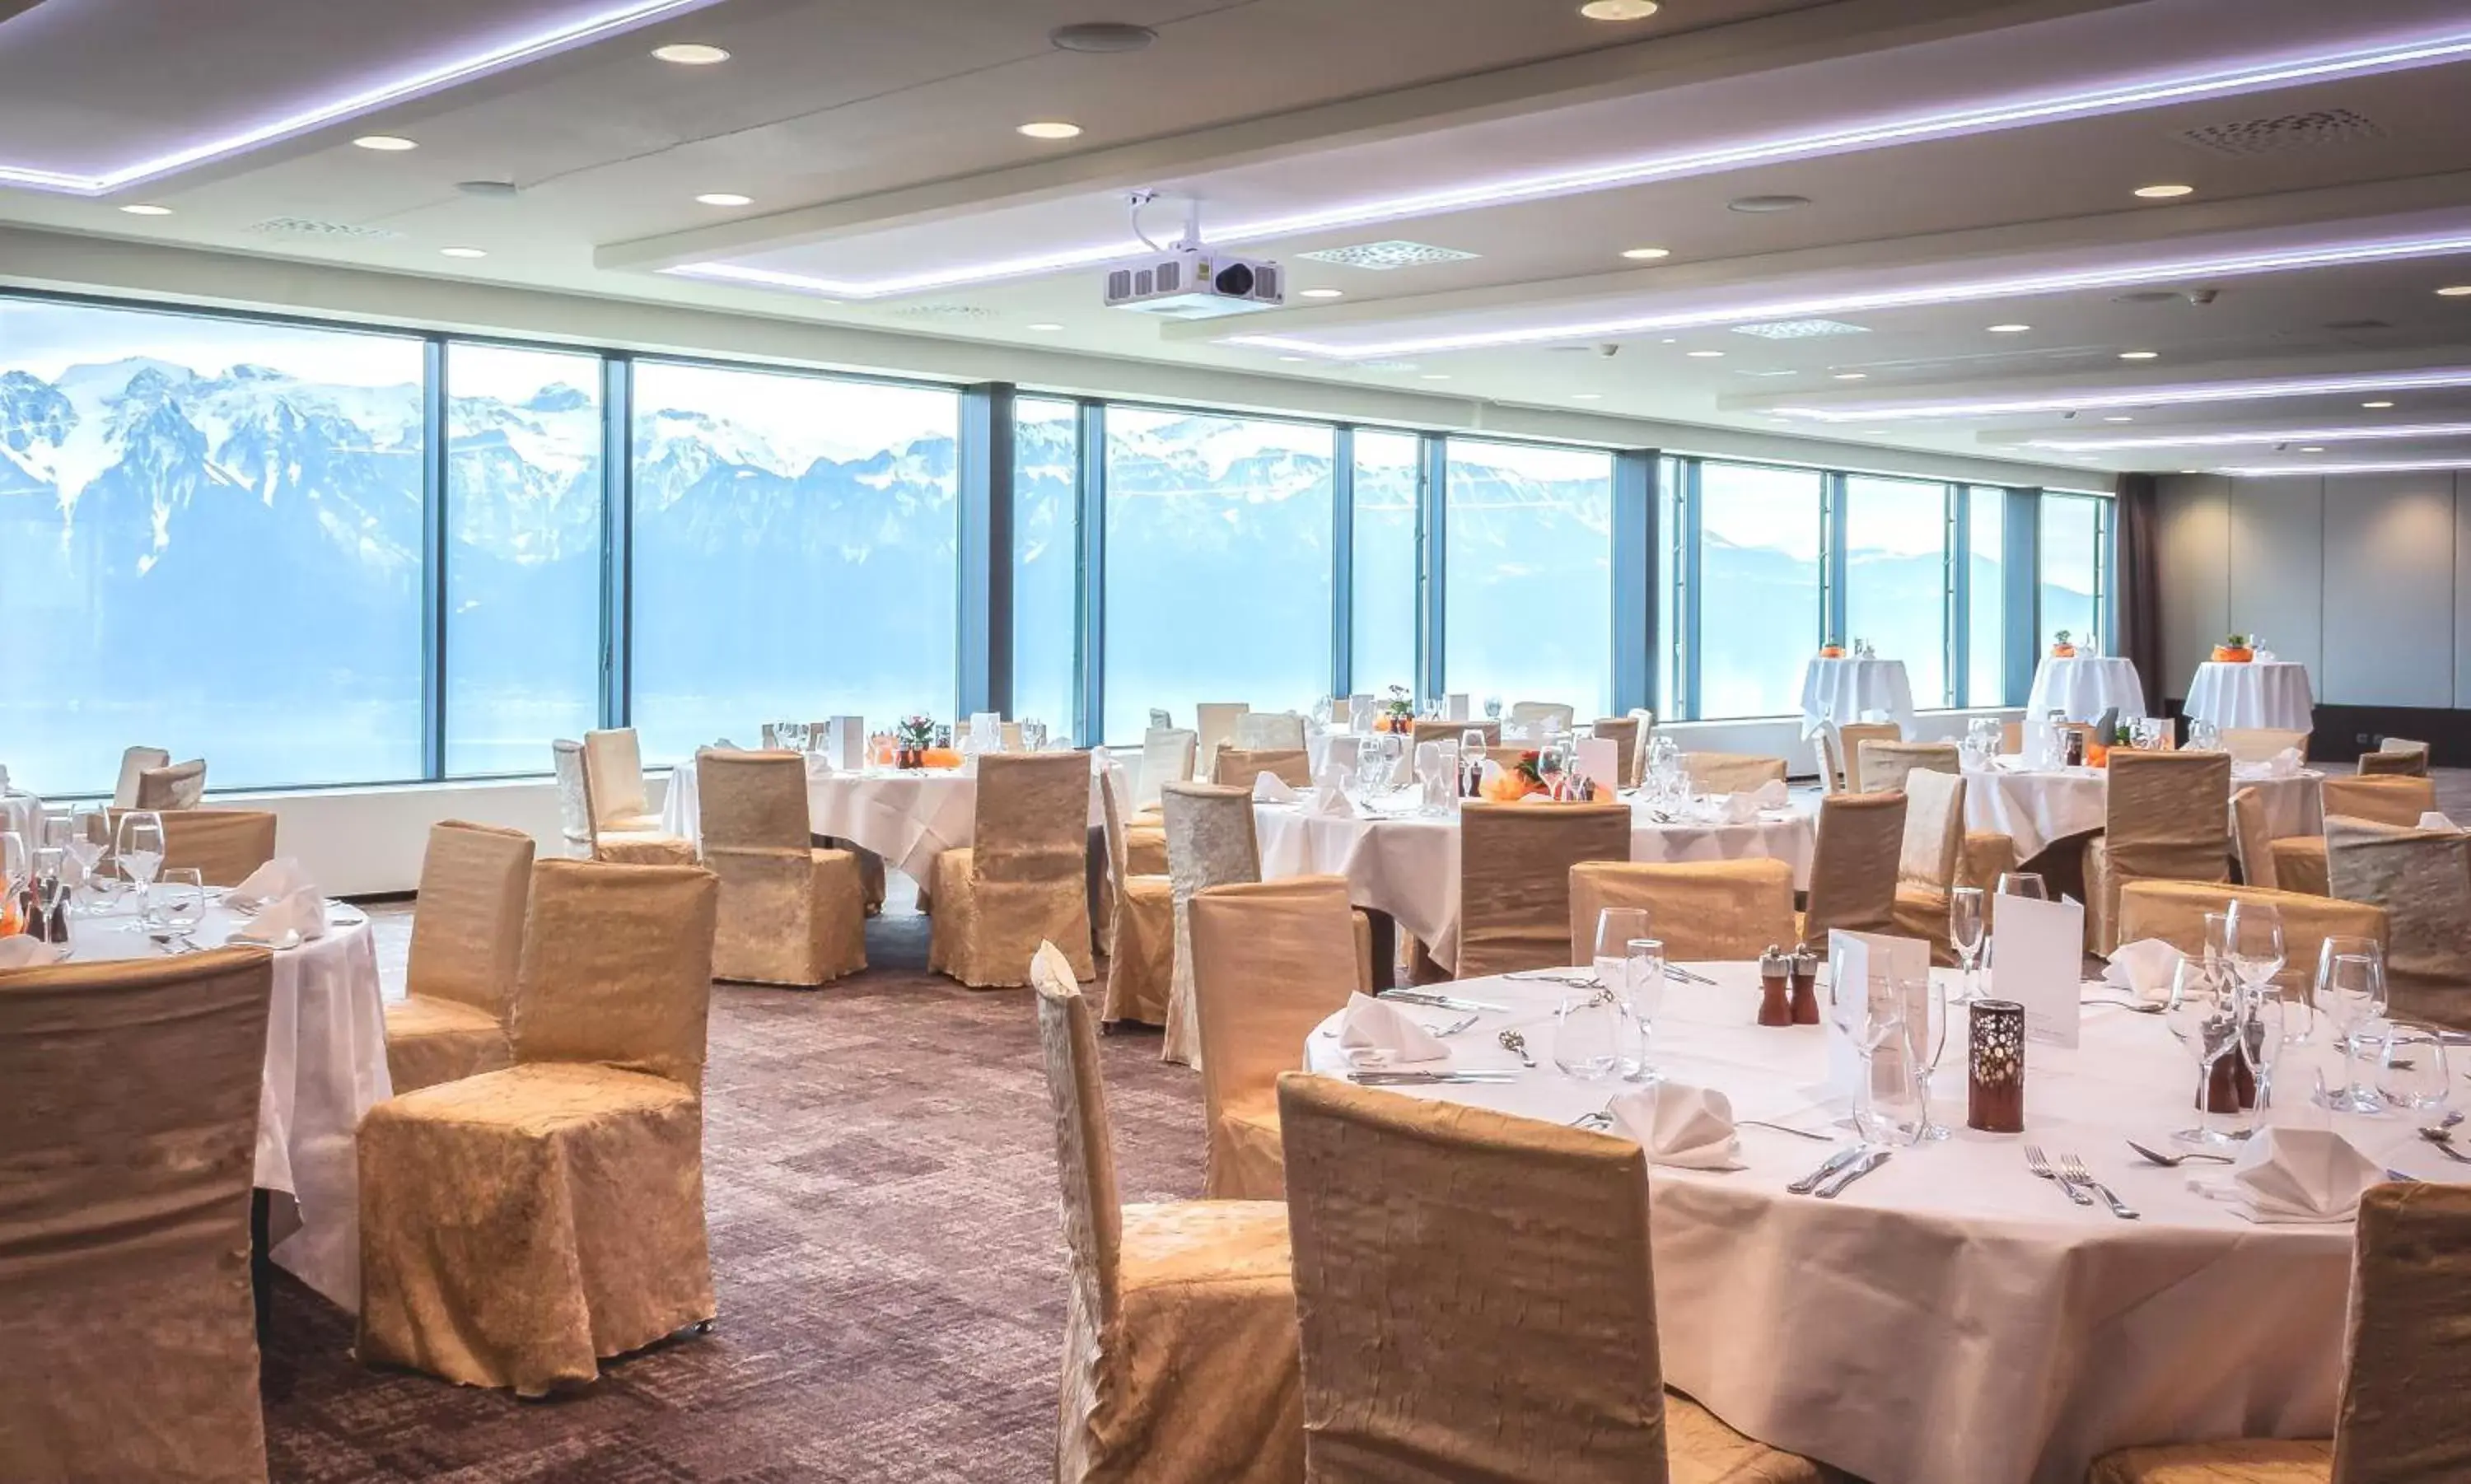 Banquet/Function facilities, Banquet Facilities in Le Mirador Resort & Spa